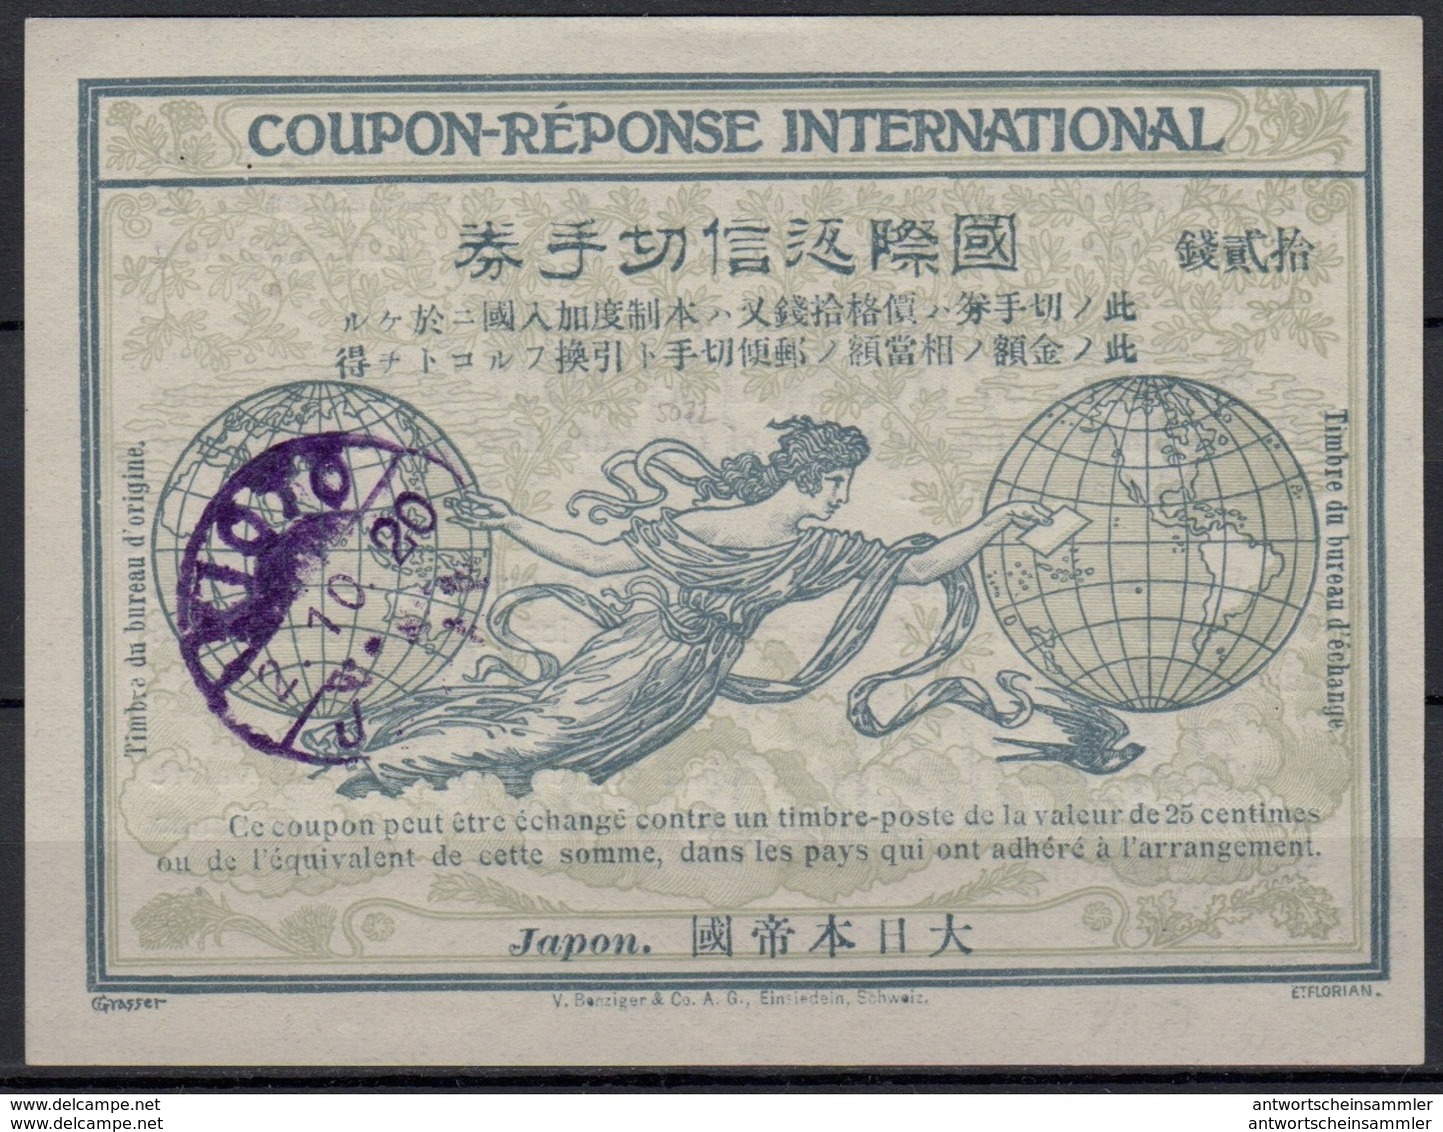 12.000+ Reply Coupon Réponse IAS IRC / Sammlung + Bestand 12.000+ Internationale Antwortscheine weltweit ab 1907